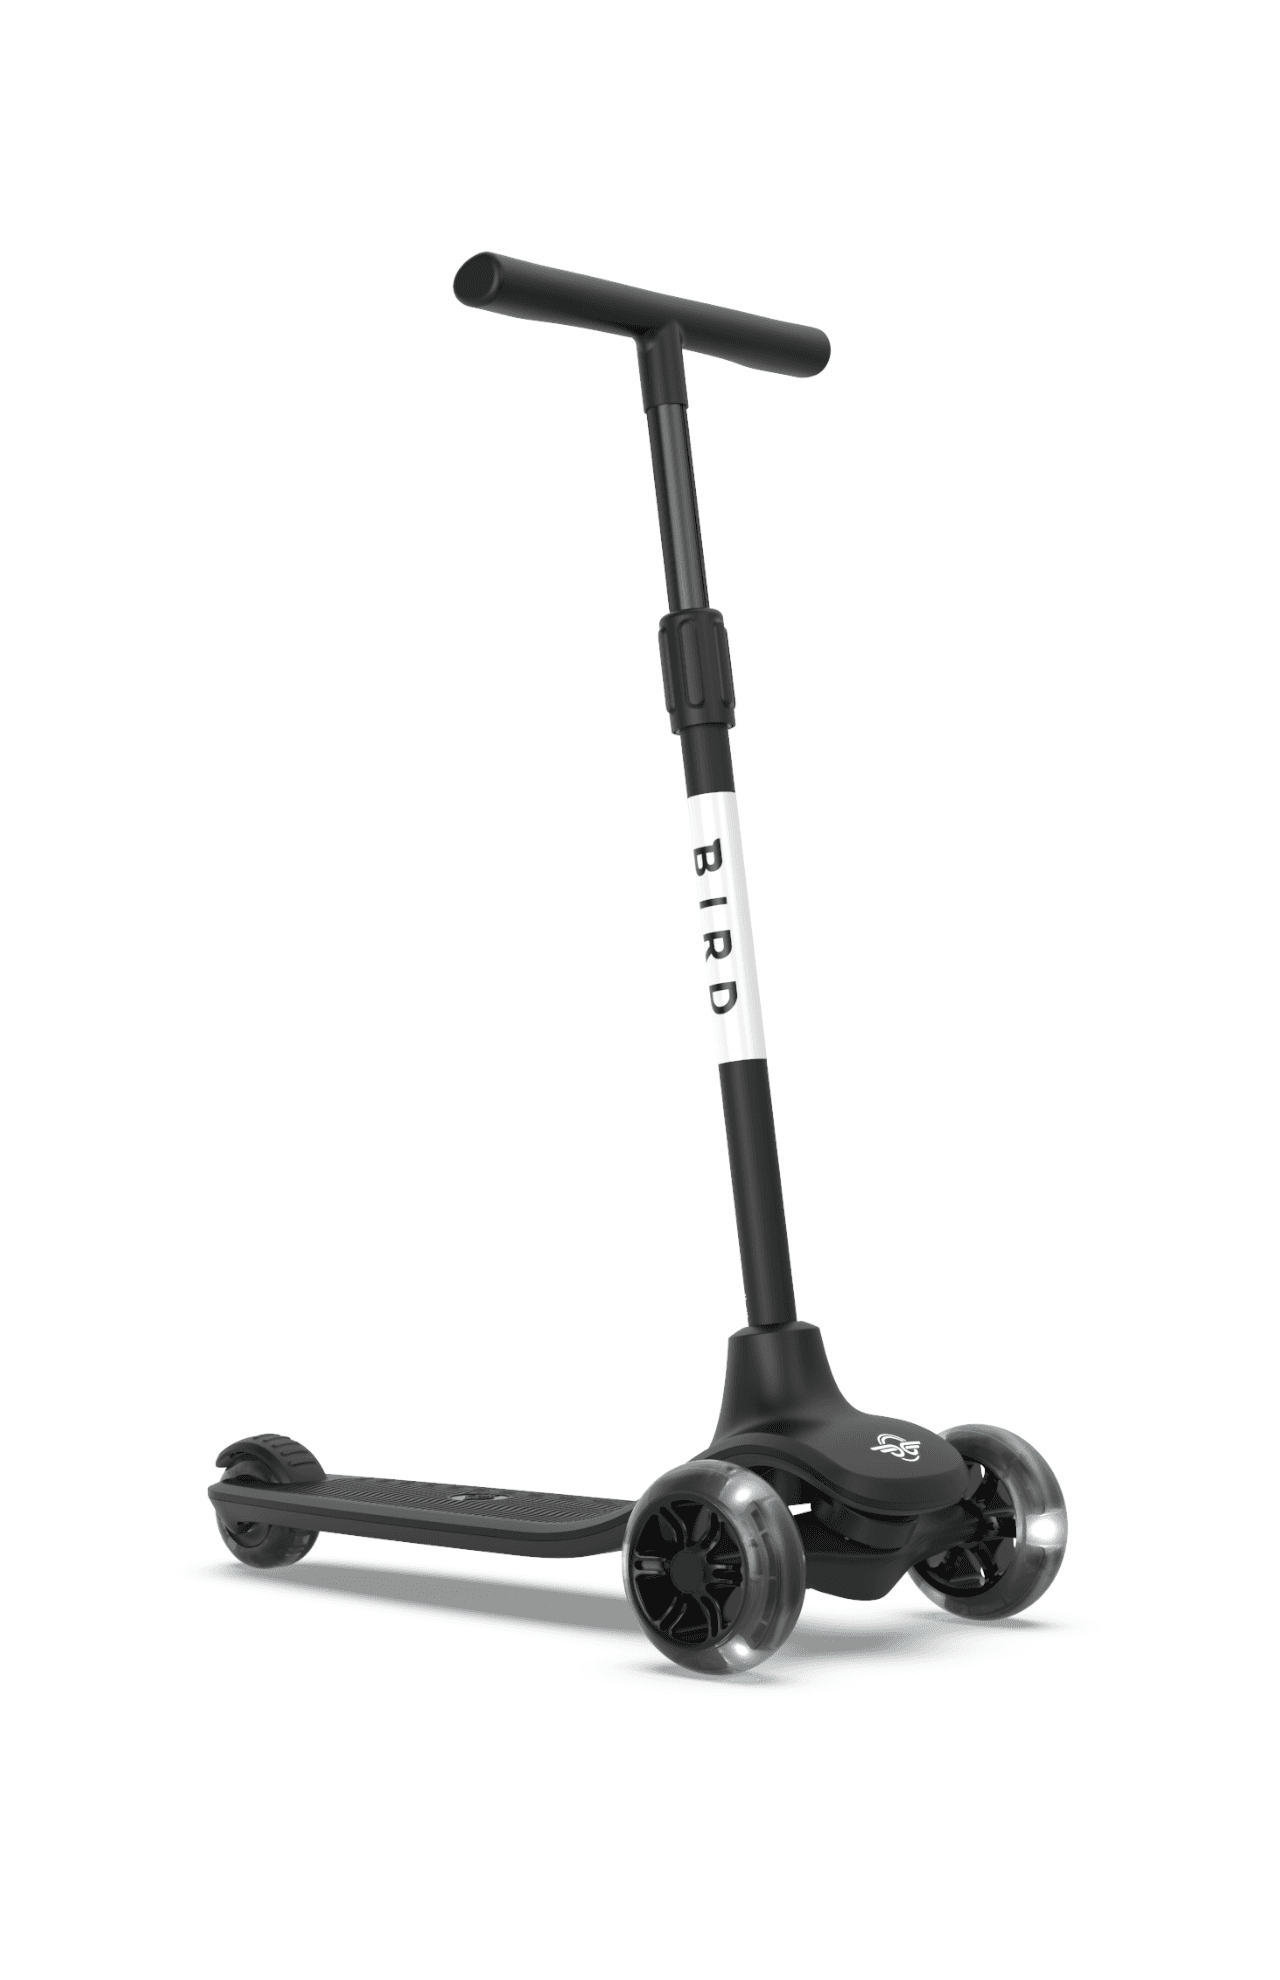 سكوتر ثلاثي العجلات للأطفال بأضواء ليد -أسود Glow Kids Scooter -  Adjustable height, 3-wheels design, Stomp brake system - Bird